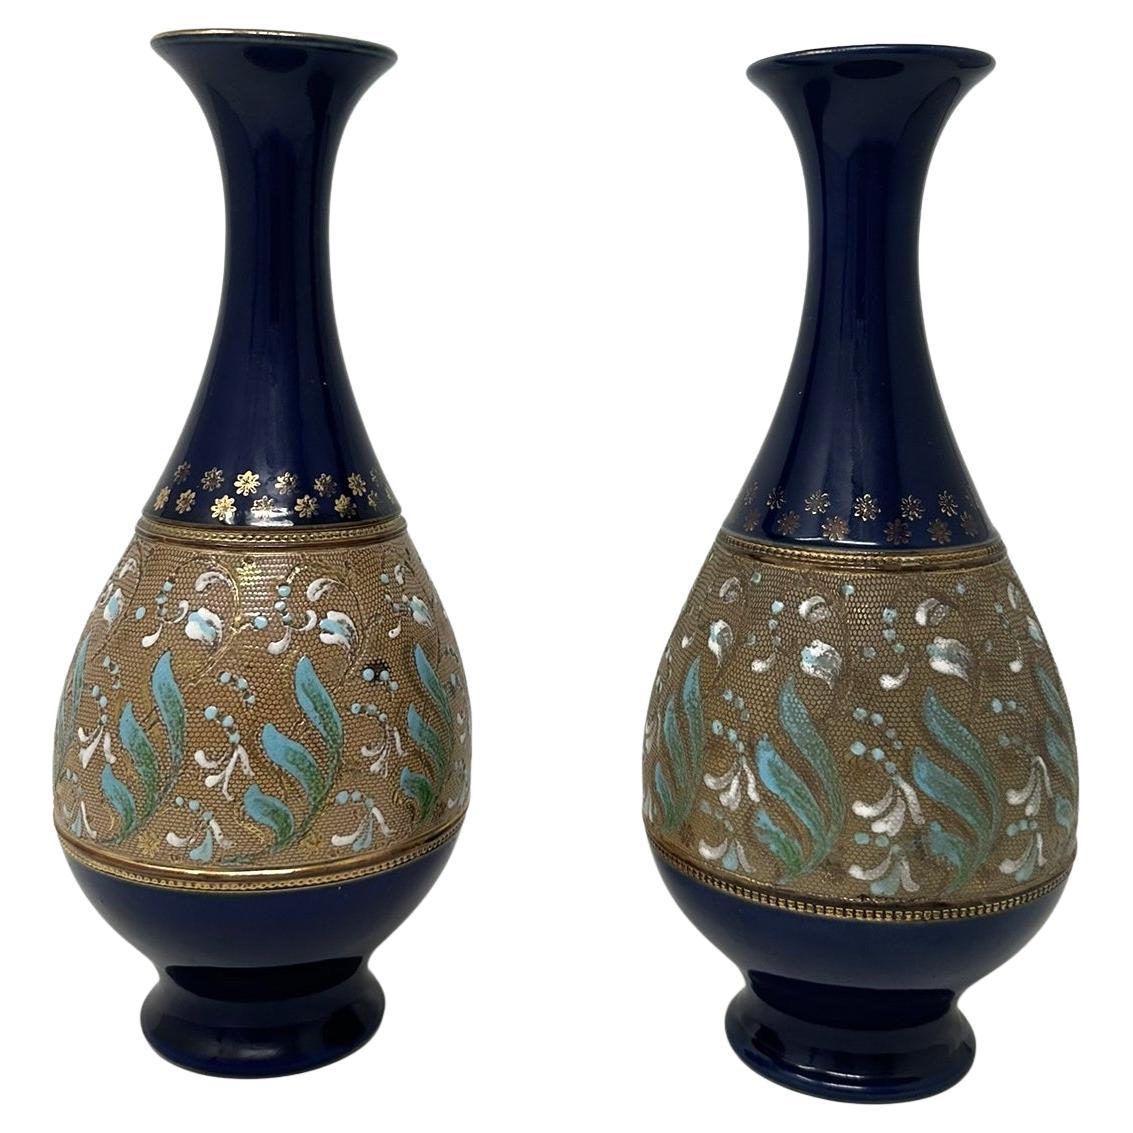 Antique Pair English Porcelain Royal Doulton Ceramic Art Nouveau Vases Urns